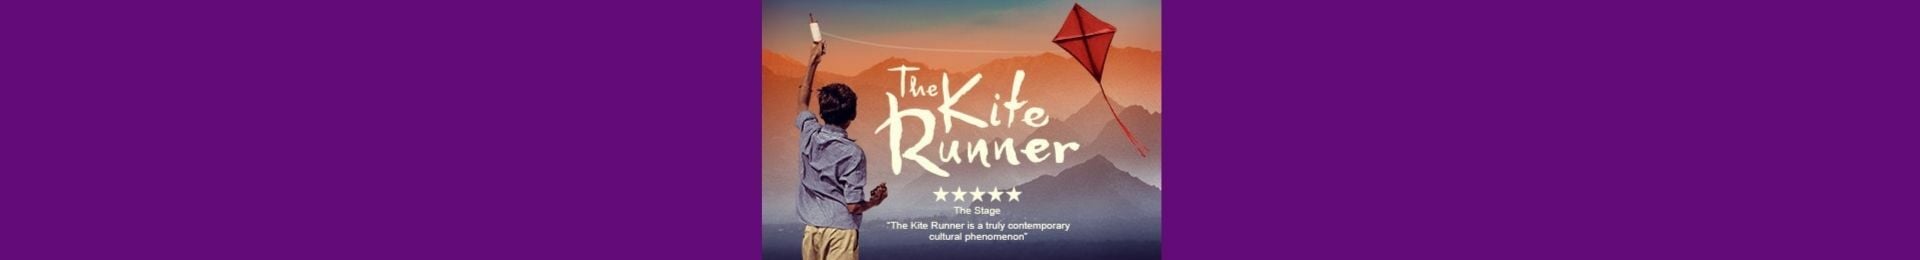 The Kite Runner banner image